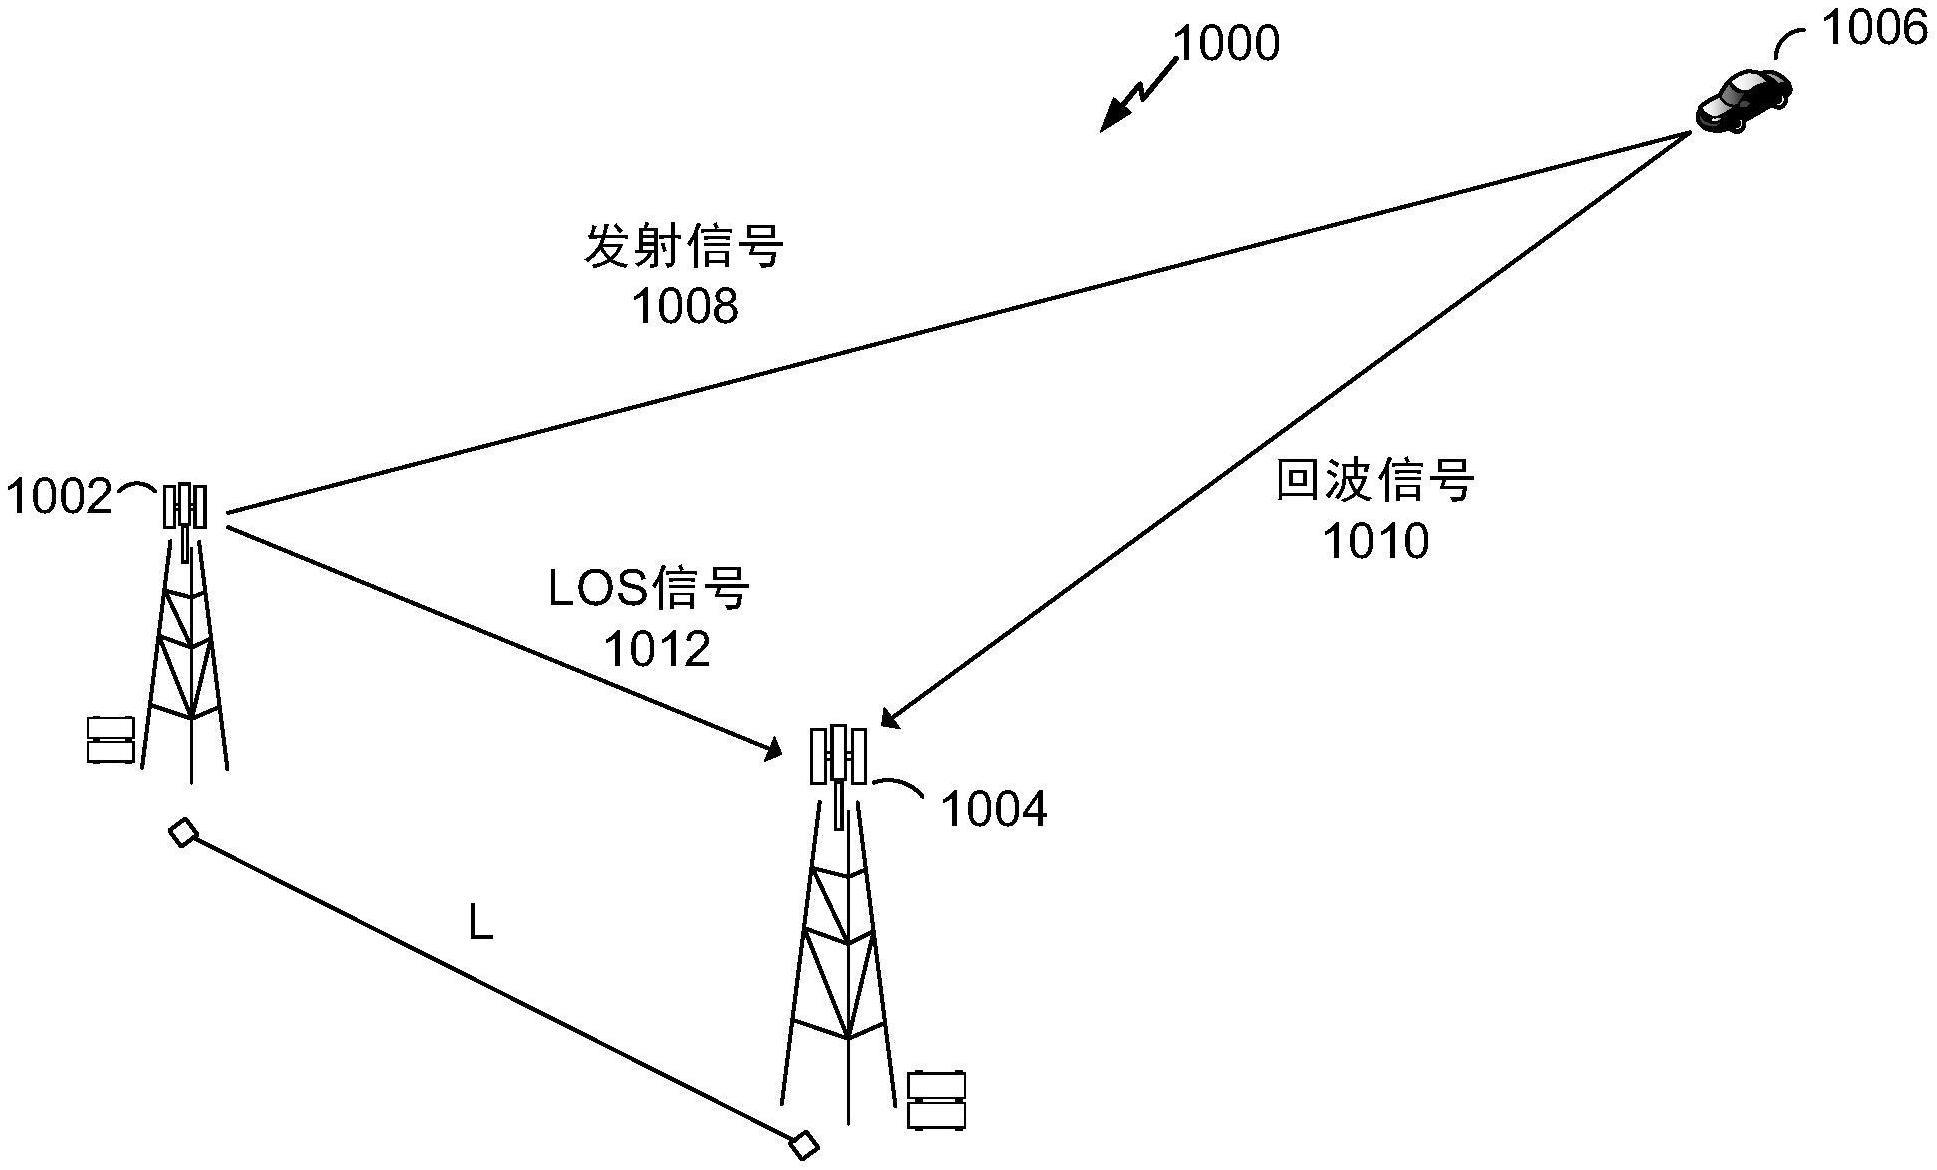 用于基站之间的参考雷达信号和至少一个目标雷达信号的时隙格式的制作方法